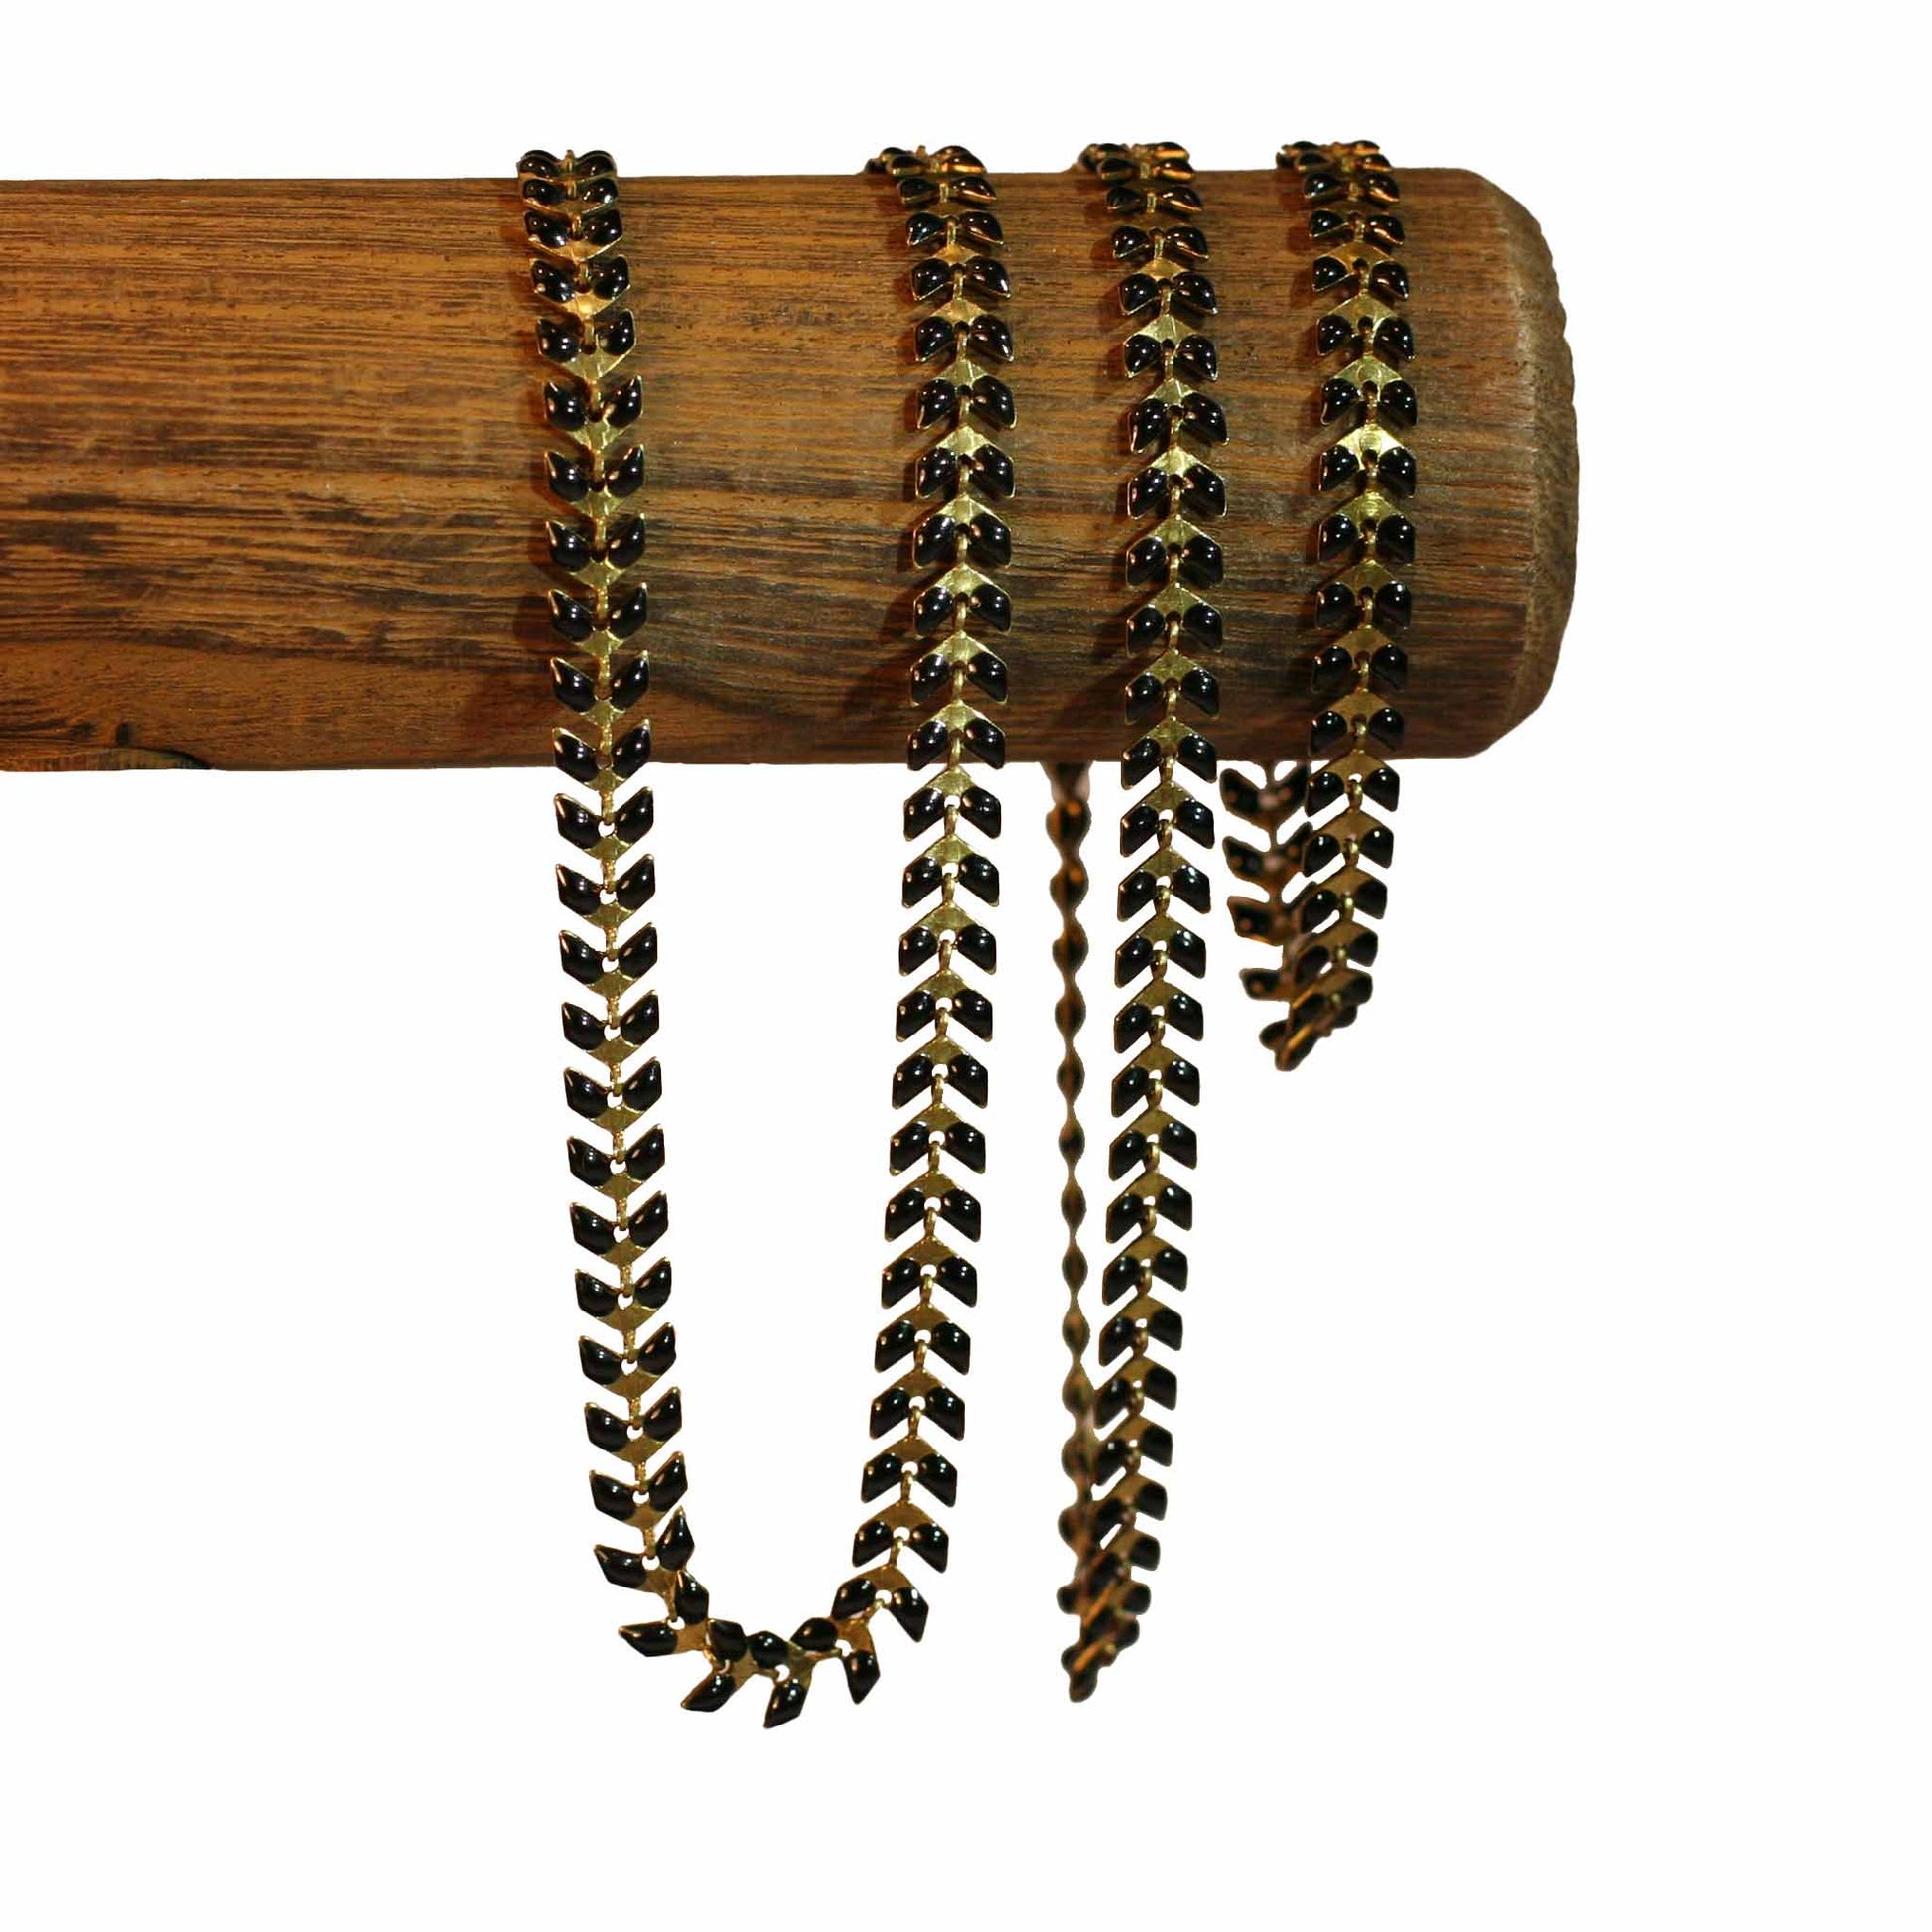 V | Black - Golden - Trio necklace, bracelet, anklet